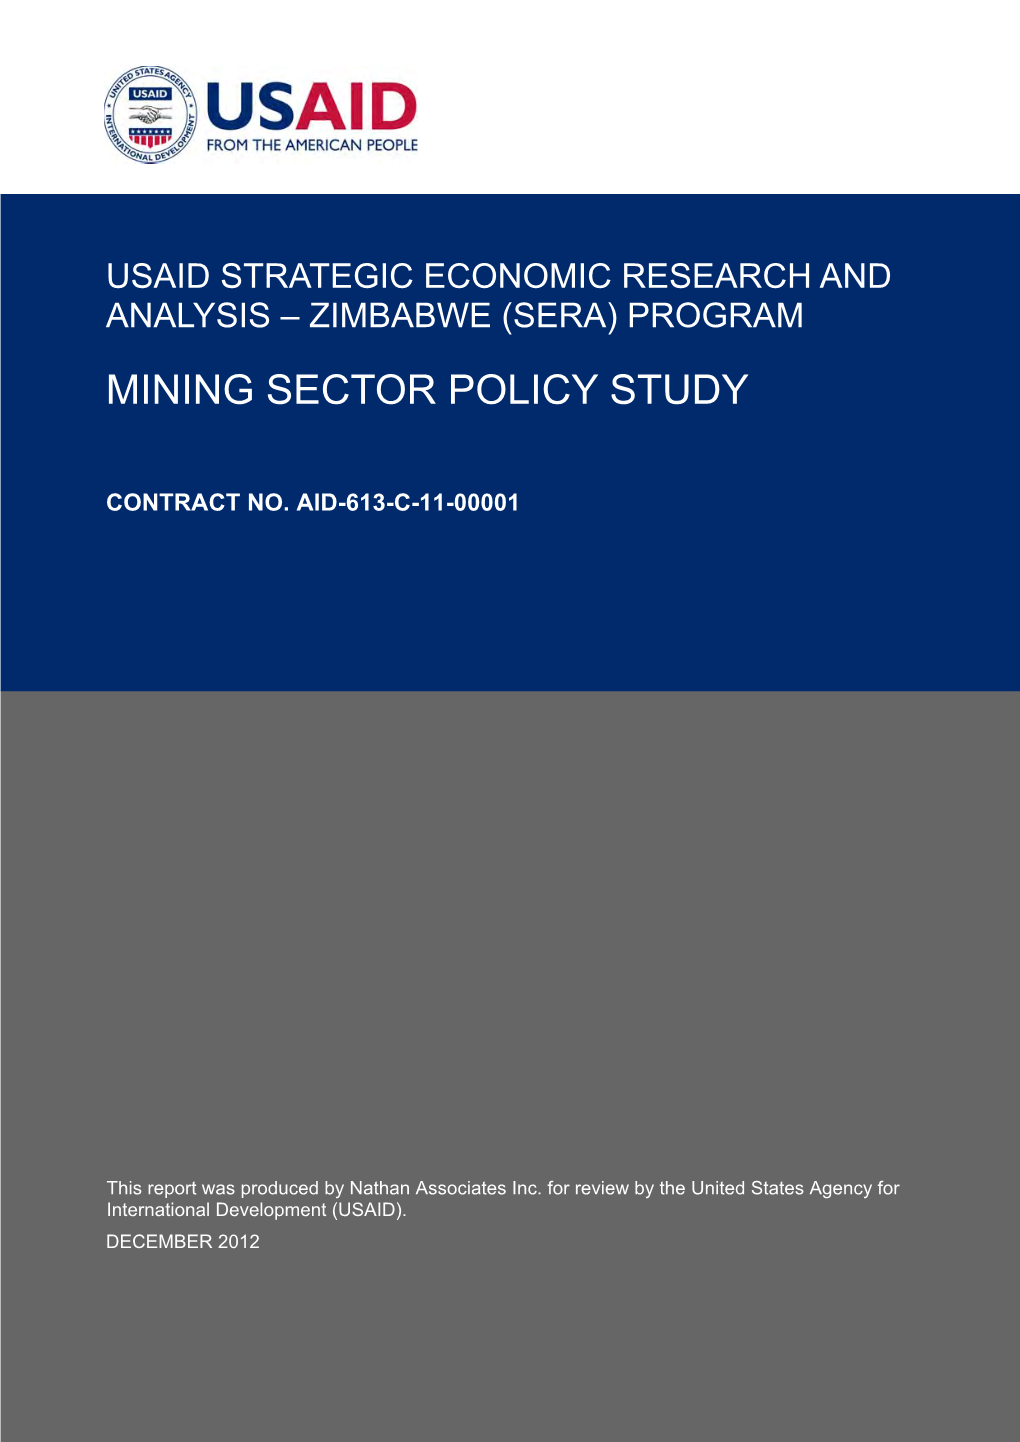 Zimbabwe (Sera) Program Mining Sector Policy Study